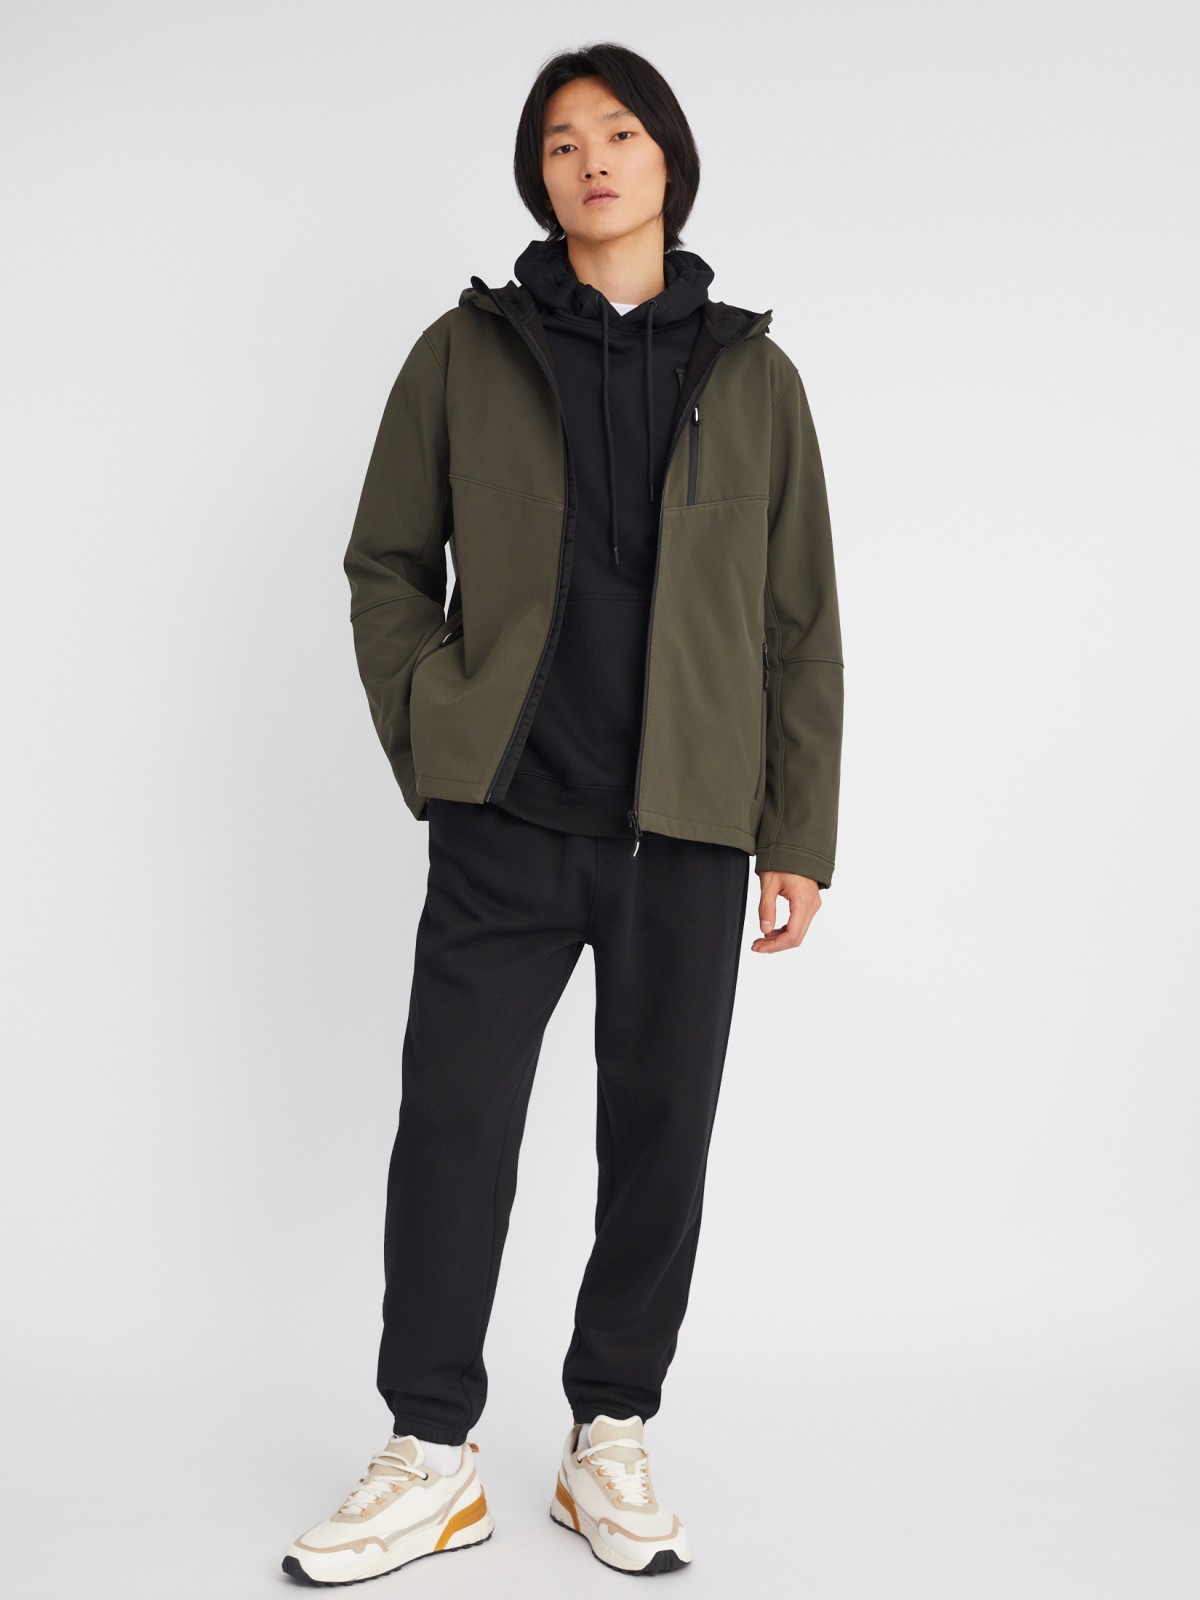 Лёгкая куртка-ветровка без утеплителя с капюшоном zolla 013325602014, цвет хаки, размер XXL - фото 2